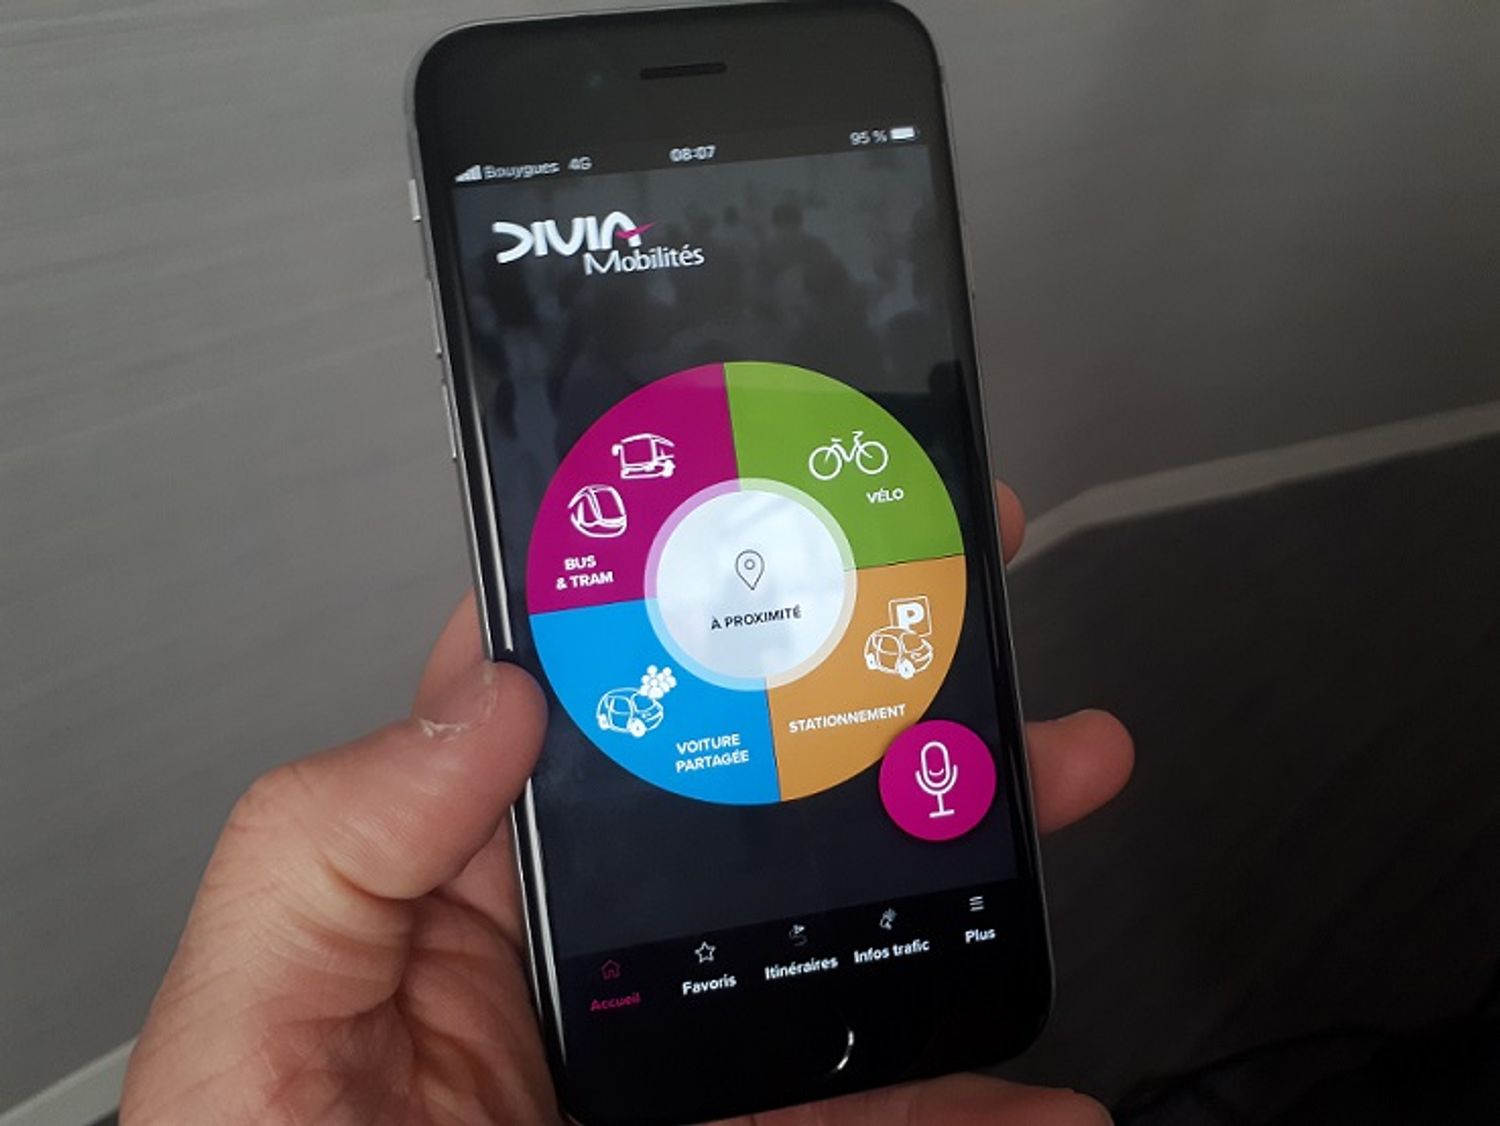 La direction de Divia a signalé ce lundi après-midi un bug qui impacte son application mobile